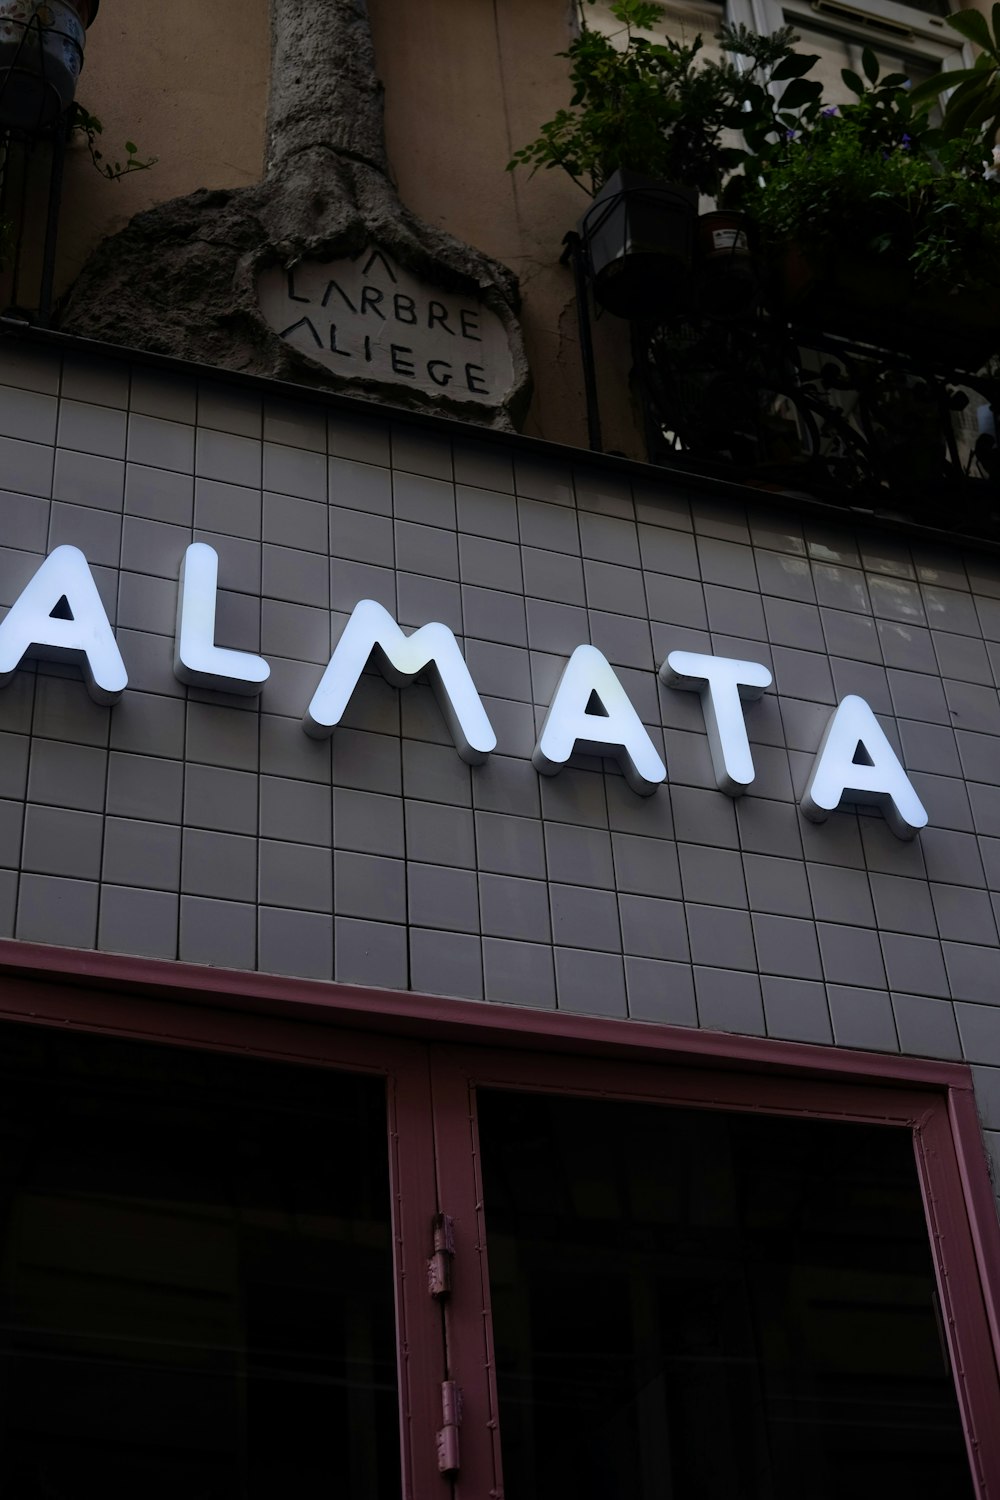 Un panneau sur le côté d’un bâtiment qui dit Almaata